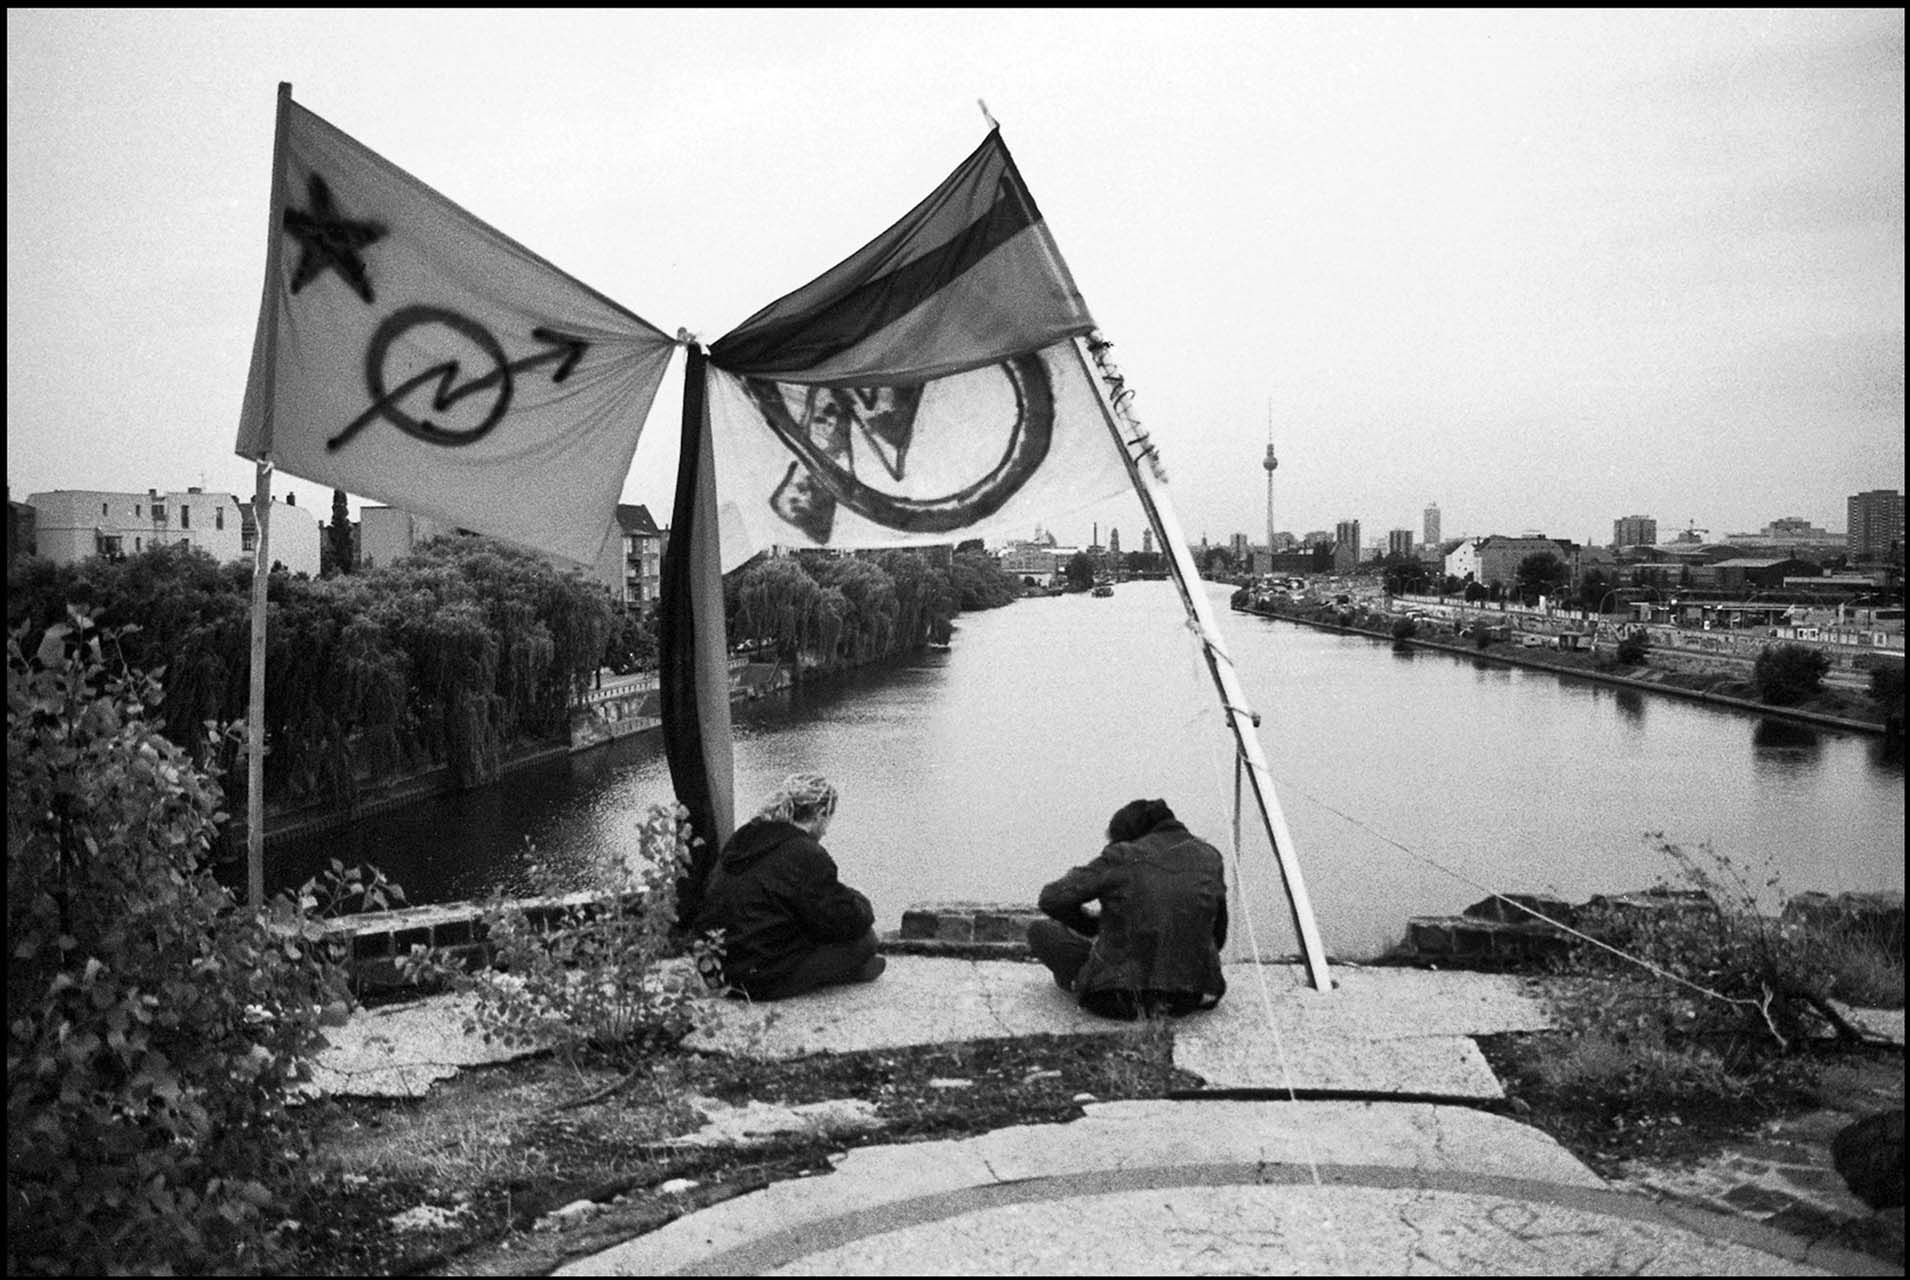 Als die Utopie für manche noch zum greifen nahe schien: Romantischer Blick von einem besetzten Turm der Oberbaumbrücke auf die Innenstadt Berlins 1992. Foto: Marco Krojač